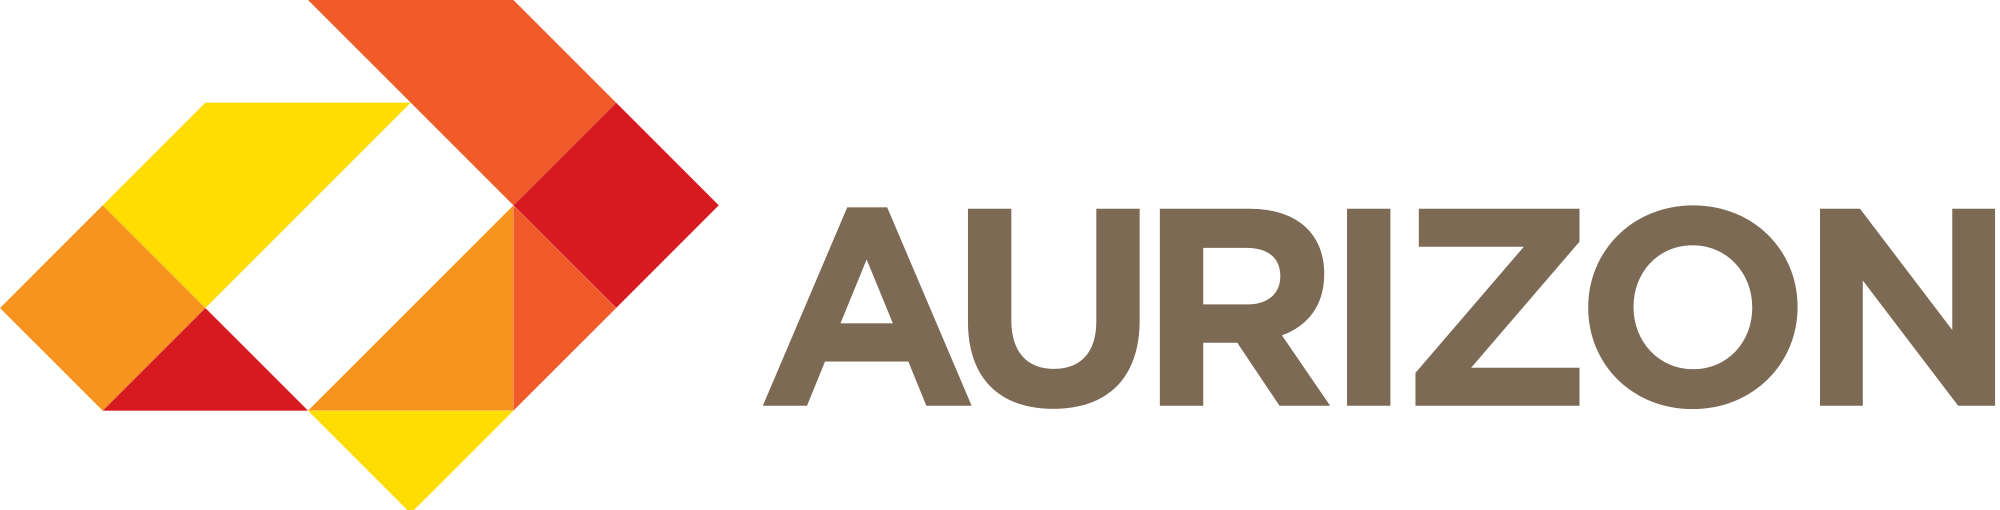 Aurizon Holdings Limited Logo